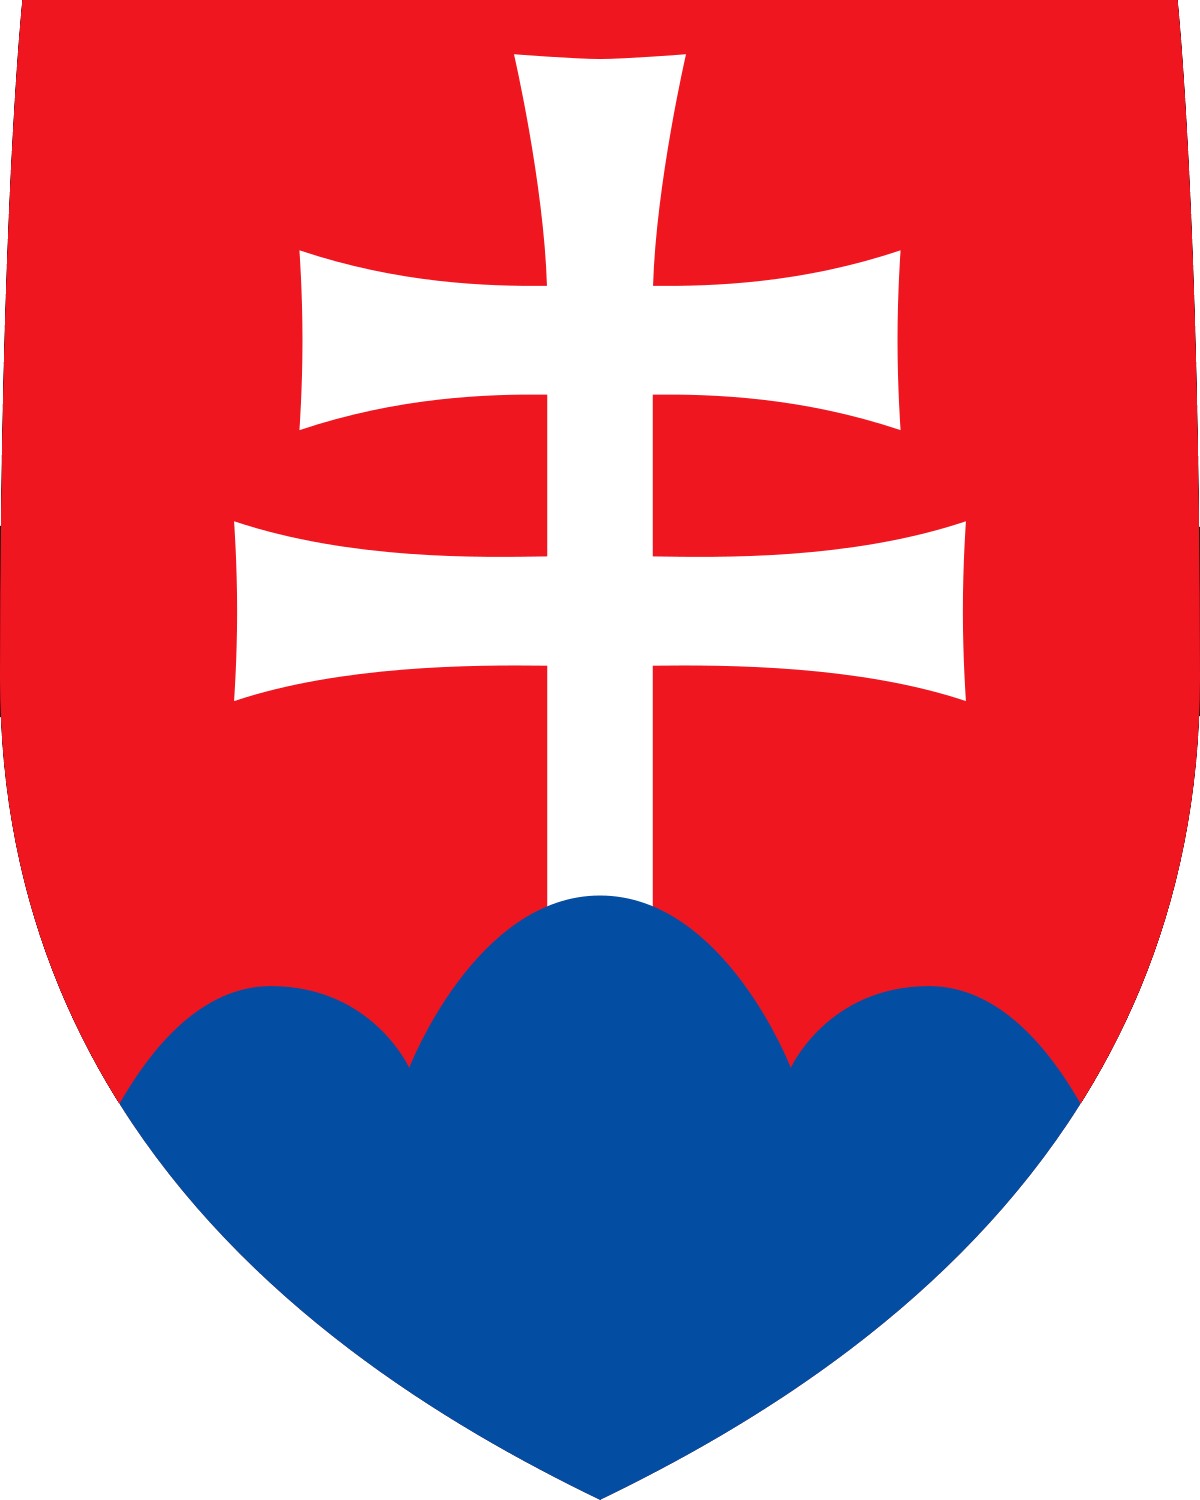 Slovak arms